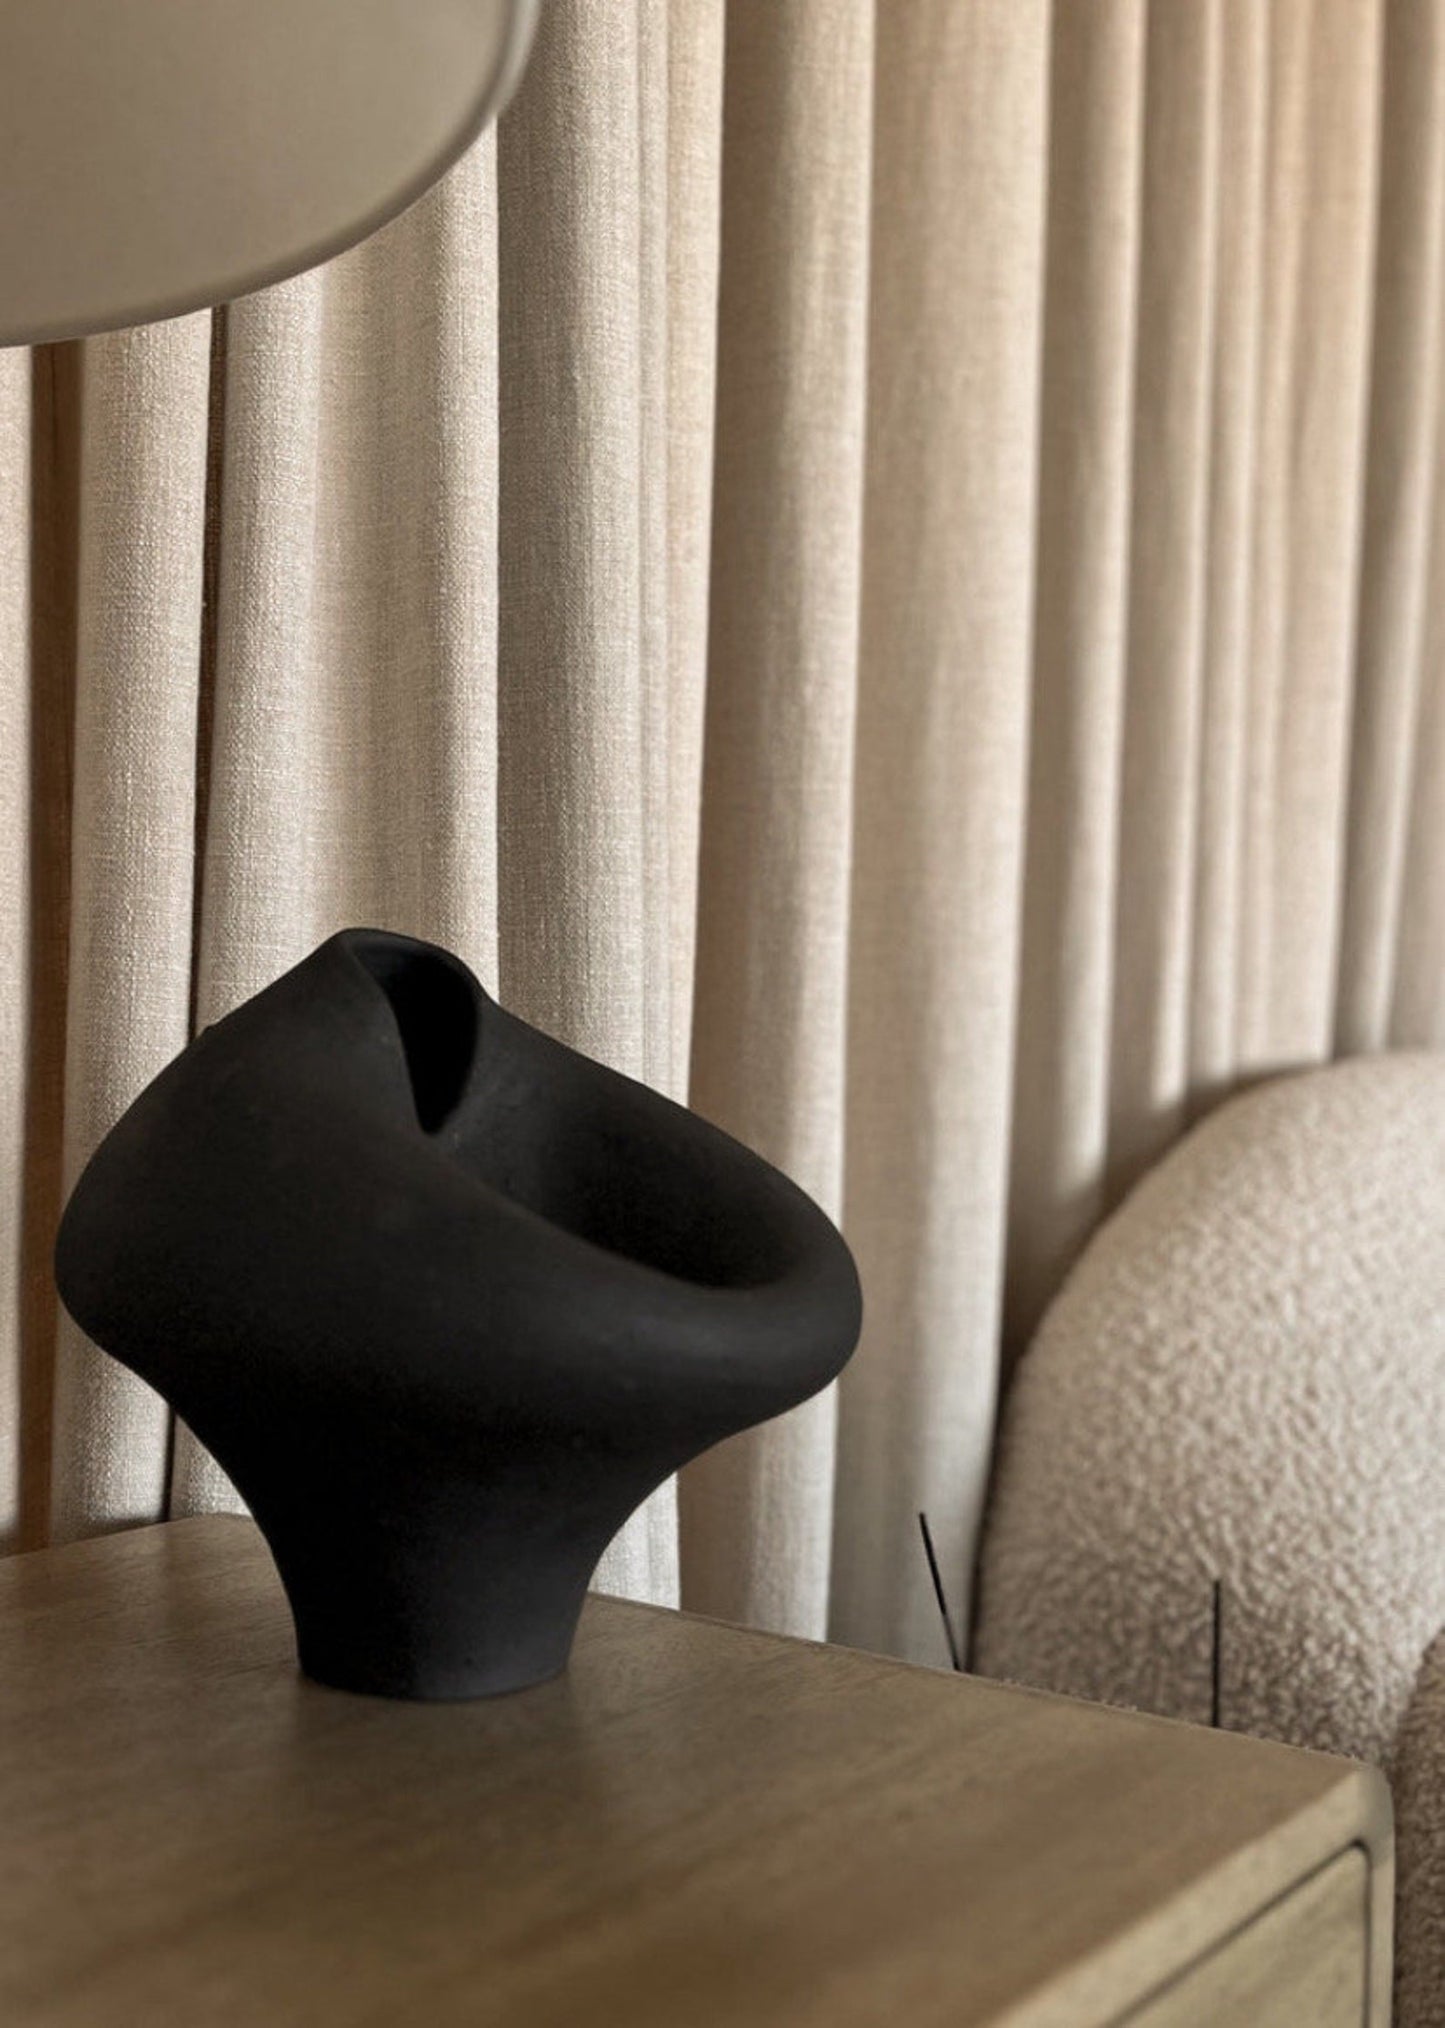 Black Ceramic Vase by Maku Ceramics